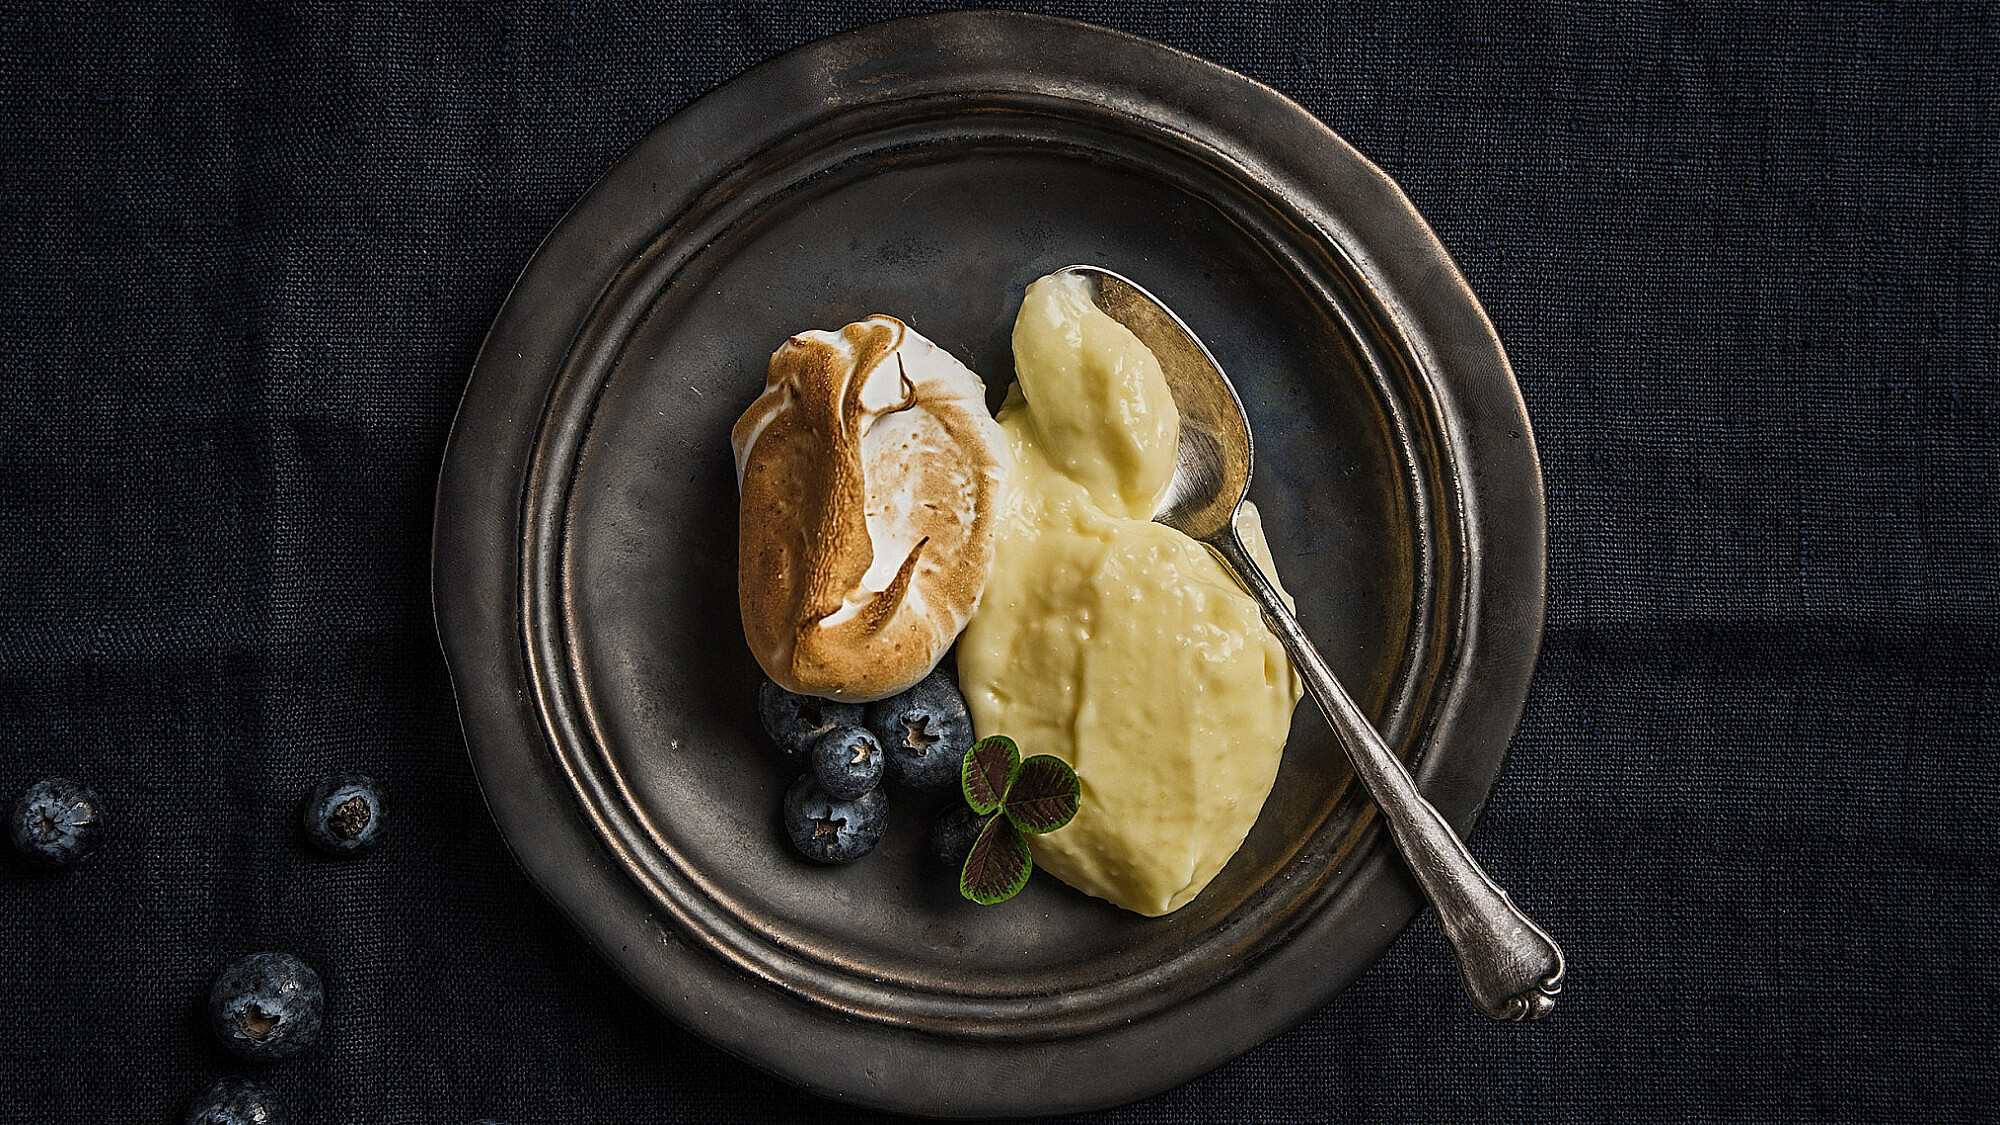 קרם לימון של שף אורן אסידו. צילום: נועם פריסמן, סטיילינג: עינב רייכנר